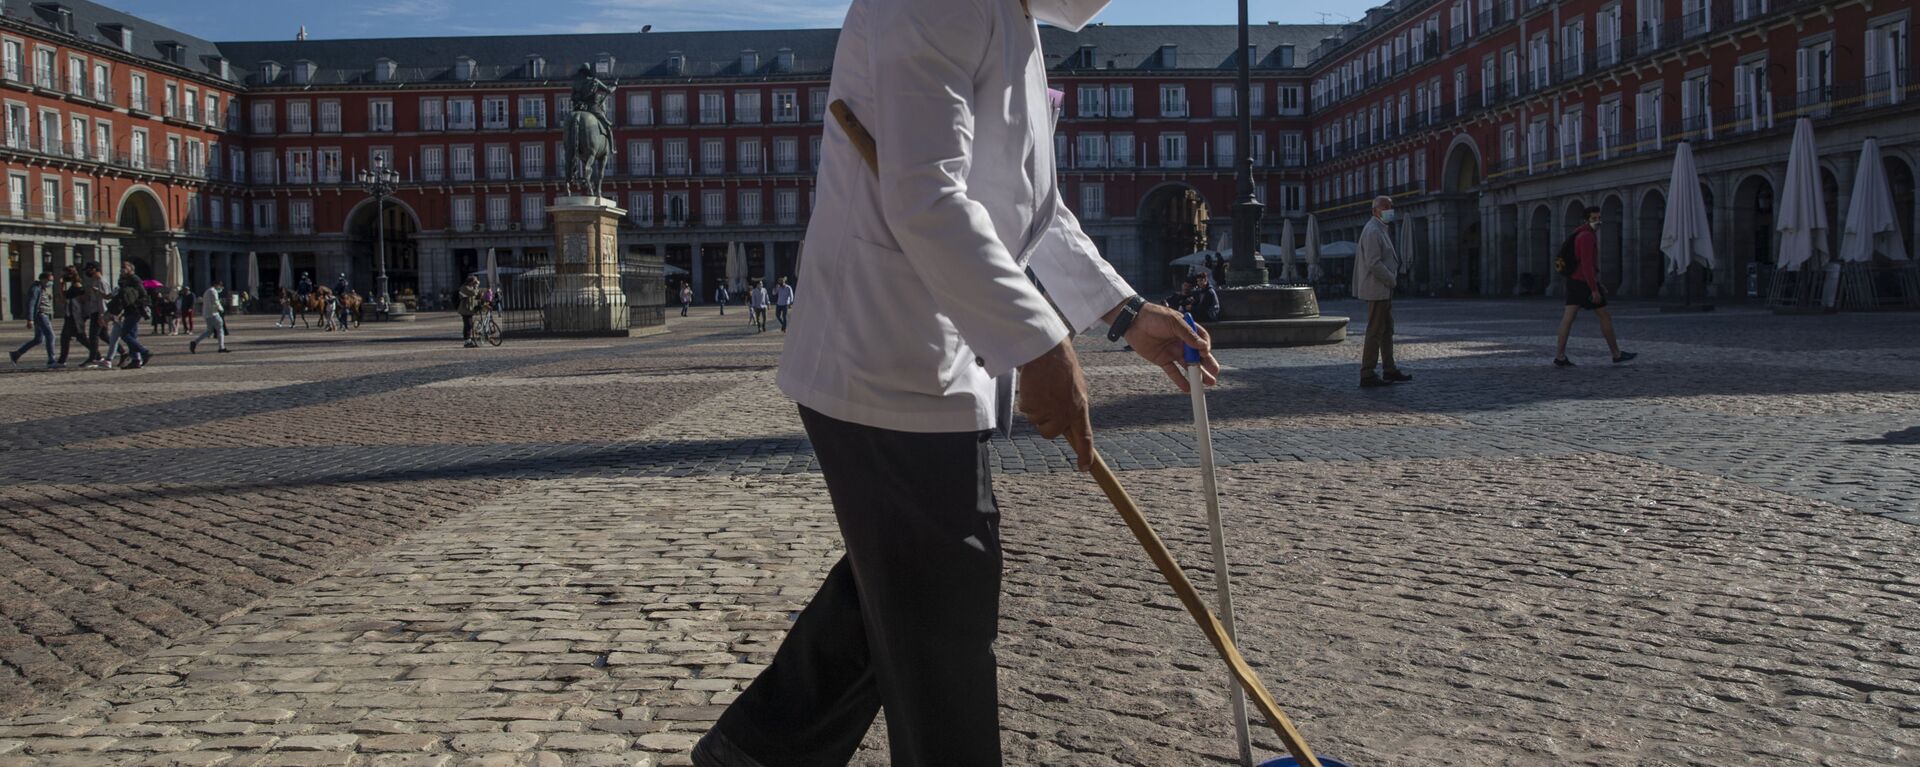 Un camarero con mascarilla limpiando en una de las terrazas de la Plaza Mayor de Madrid - Sputnik Mundo, 1920, 10.03.2021